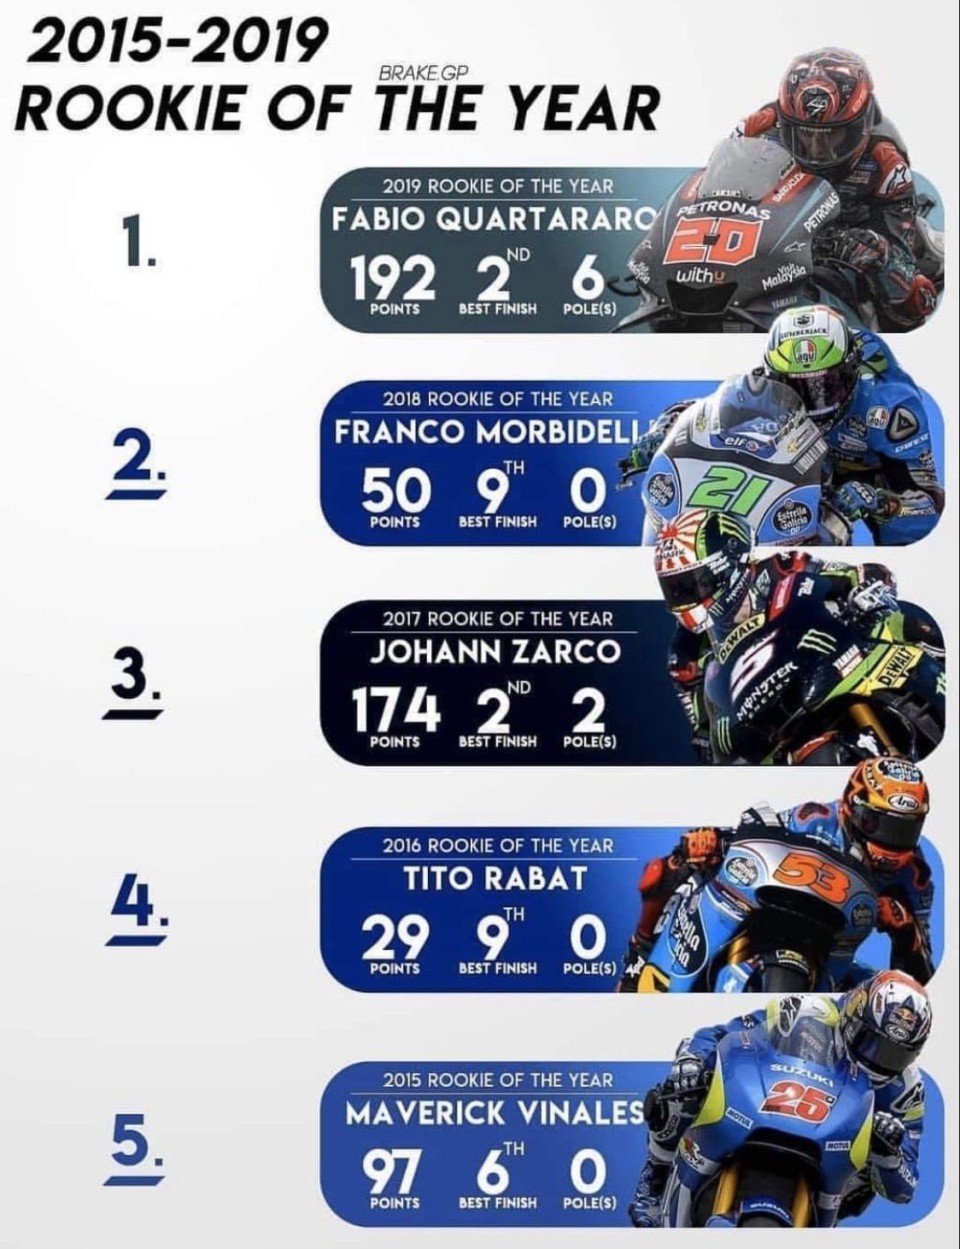 MotoGP: Chi è stato il migliore rookie della MotoGP negli ultimi cinque anni?